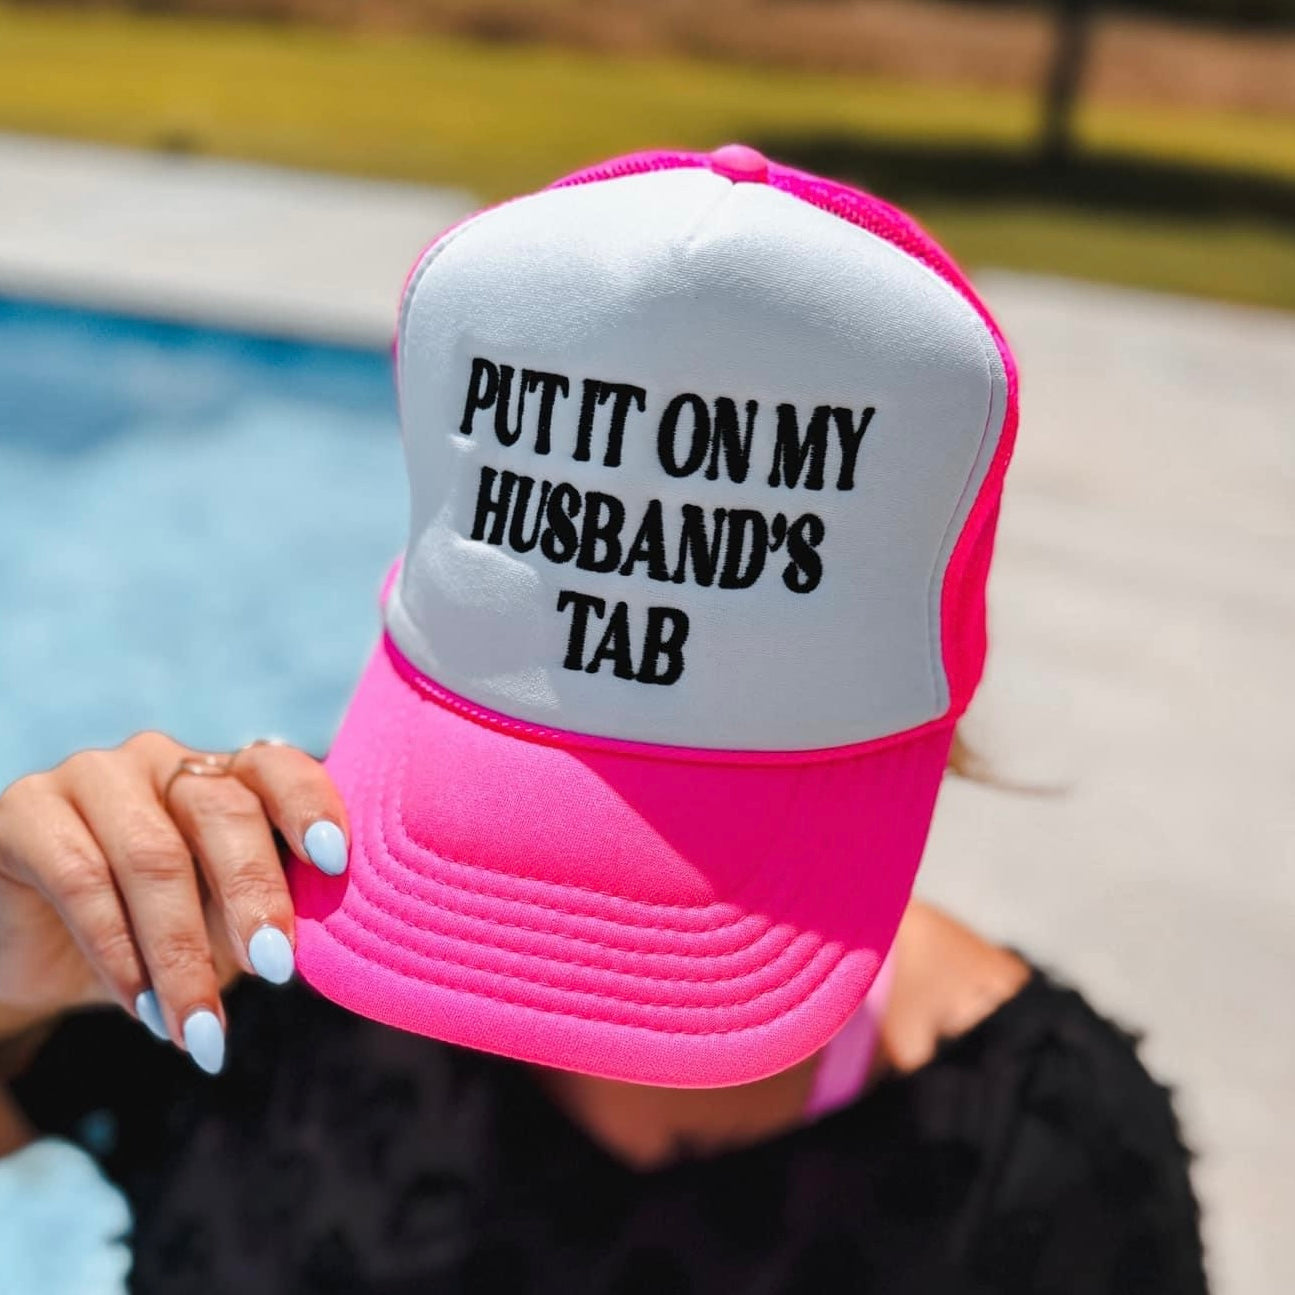 Put It On My Husbands Tab Trucker Hat